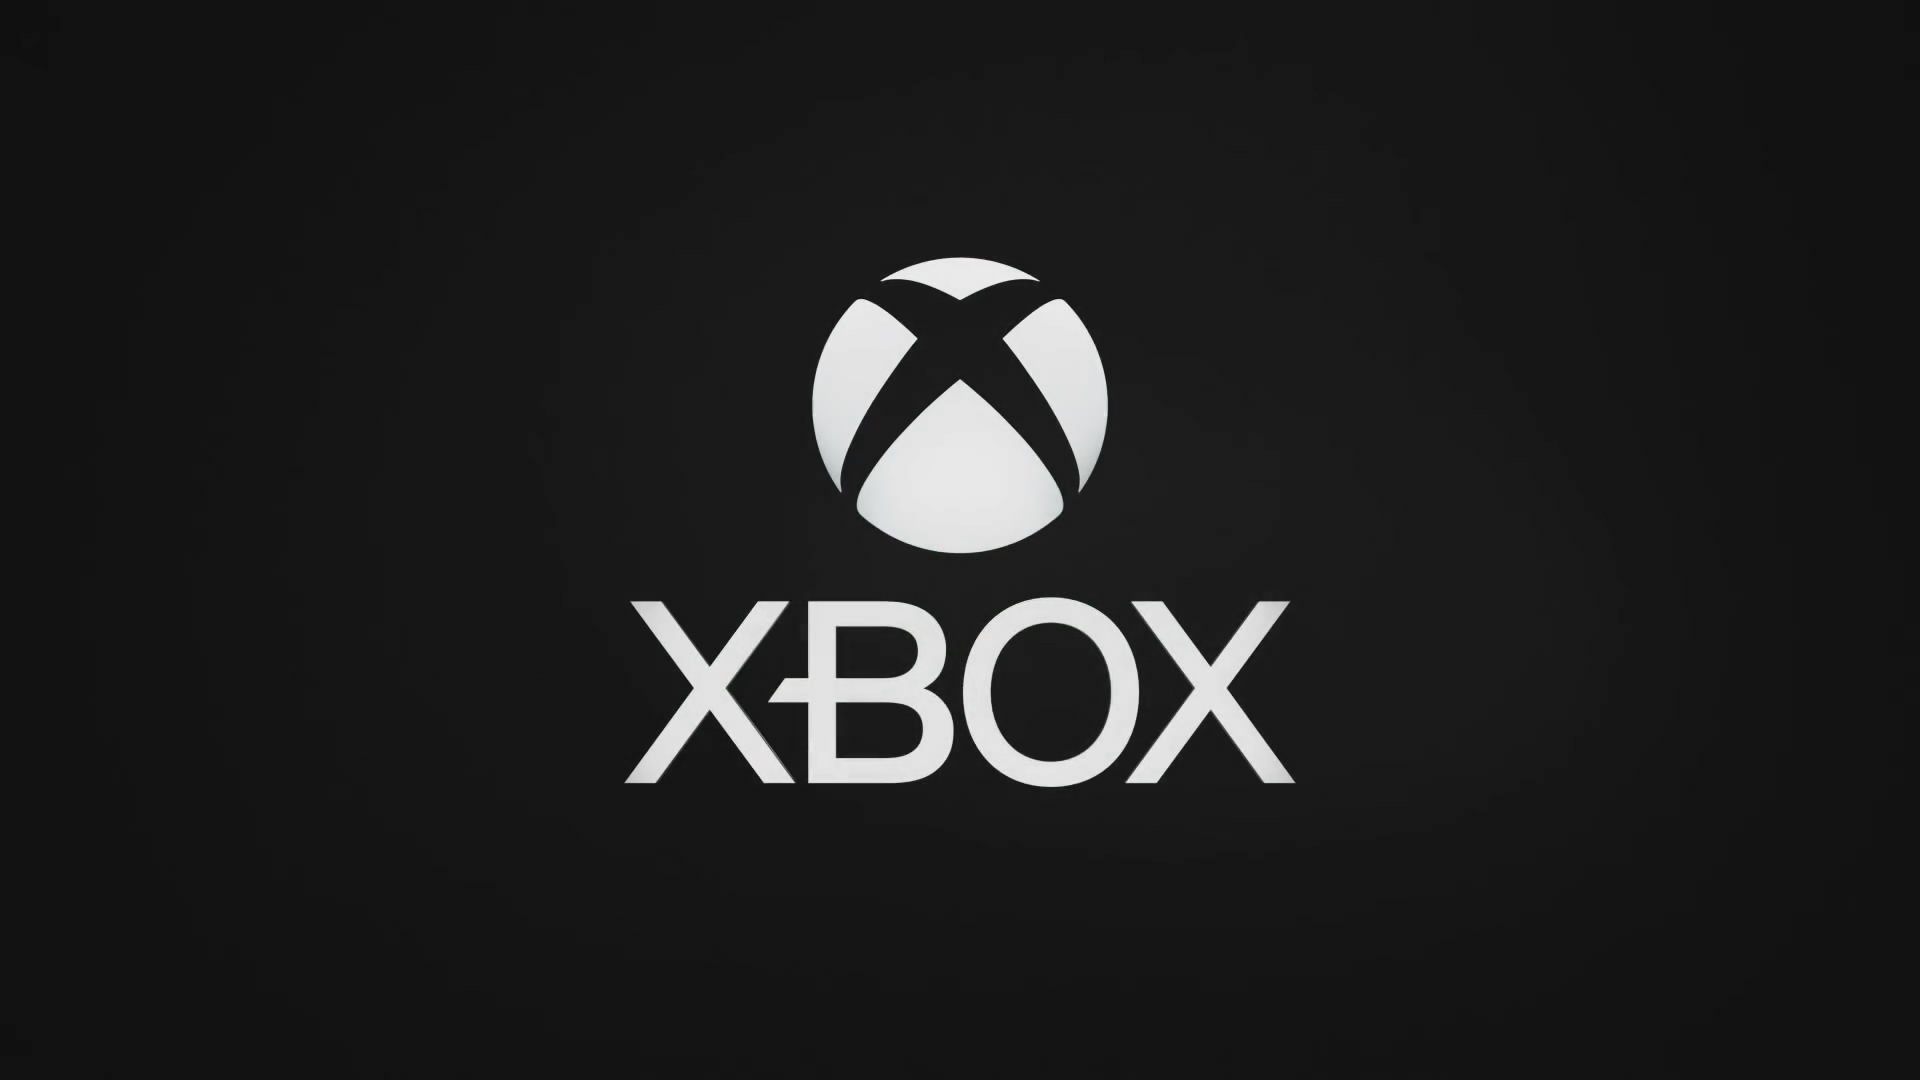 Anzeige-Deals-Sales-Xbox-Controller-f-r-nur-37-75-im-Angebot